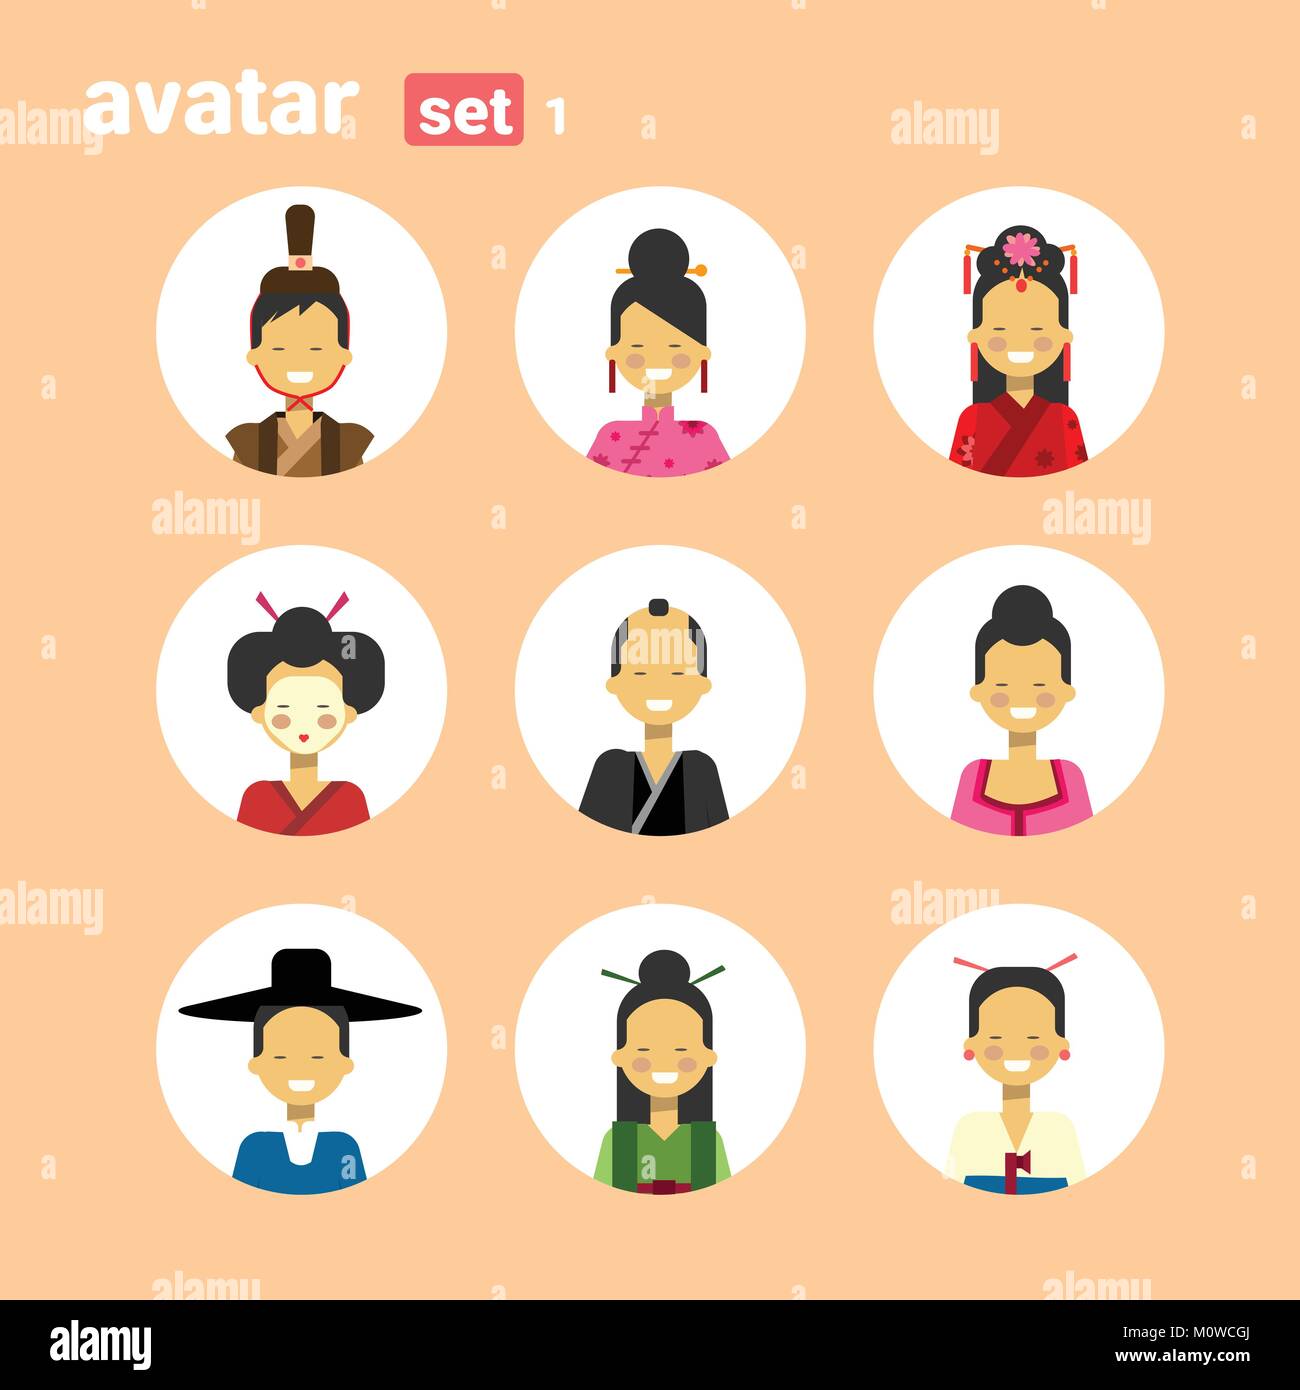 L'homme et de la femme asiatique sur l'icône de la série Avatar Femme Homme en costume traditionnel, la collection de portraits de profil Illustration de Vecteur